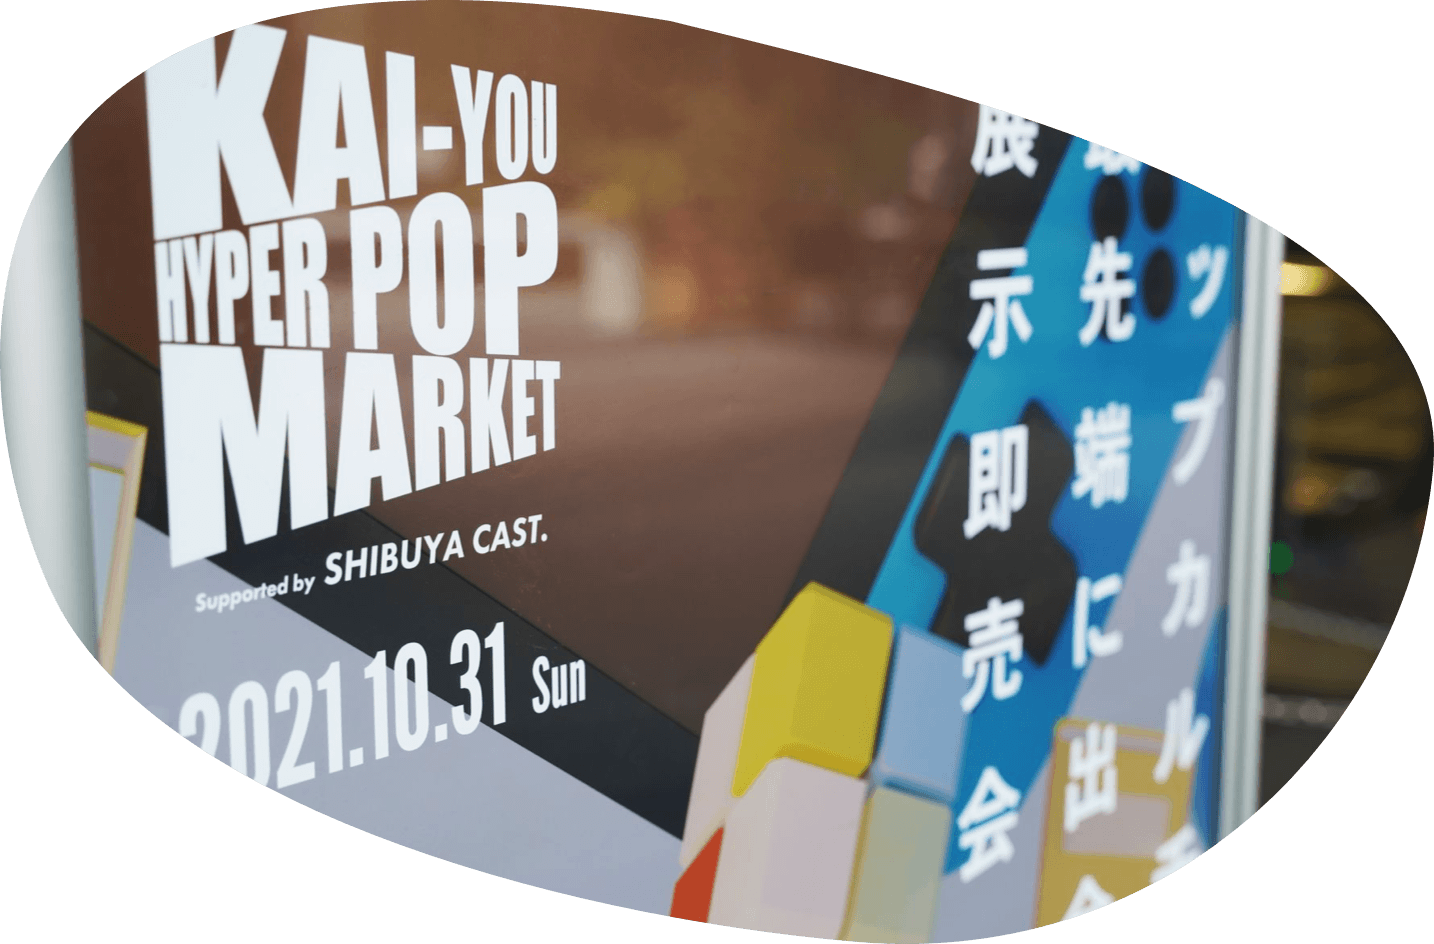 KAI-YOU popmarket